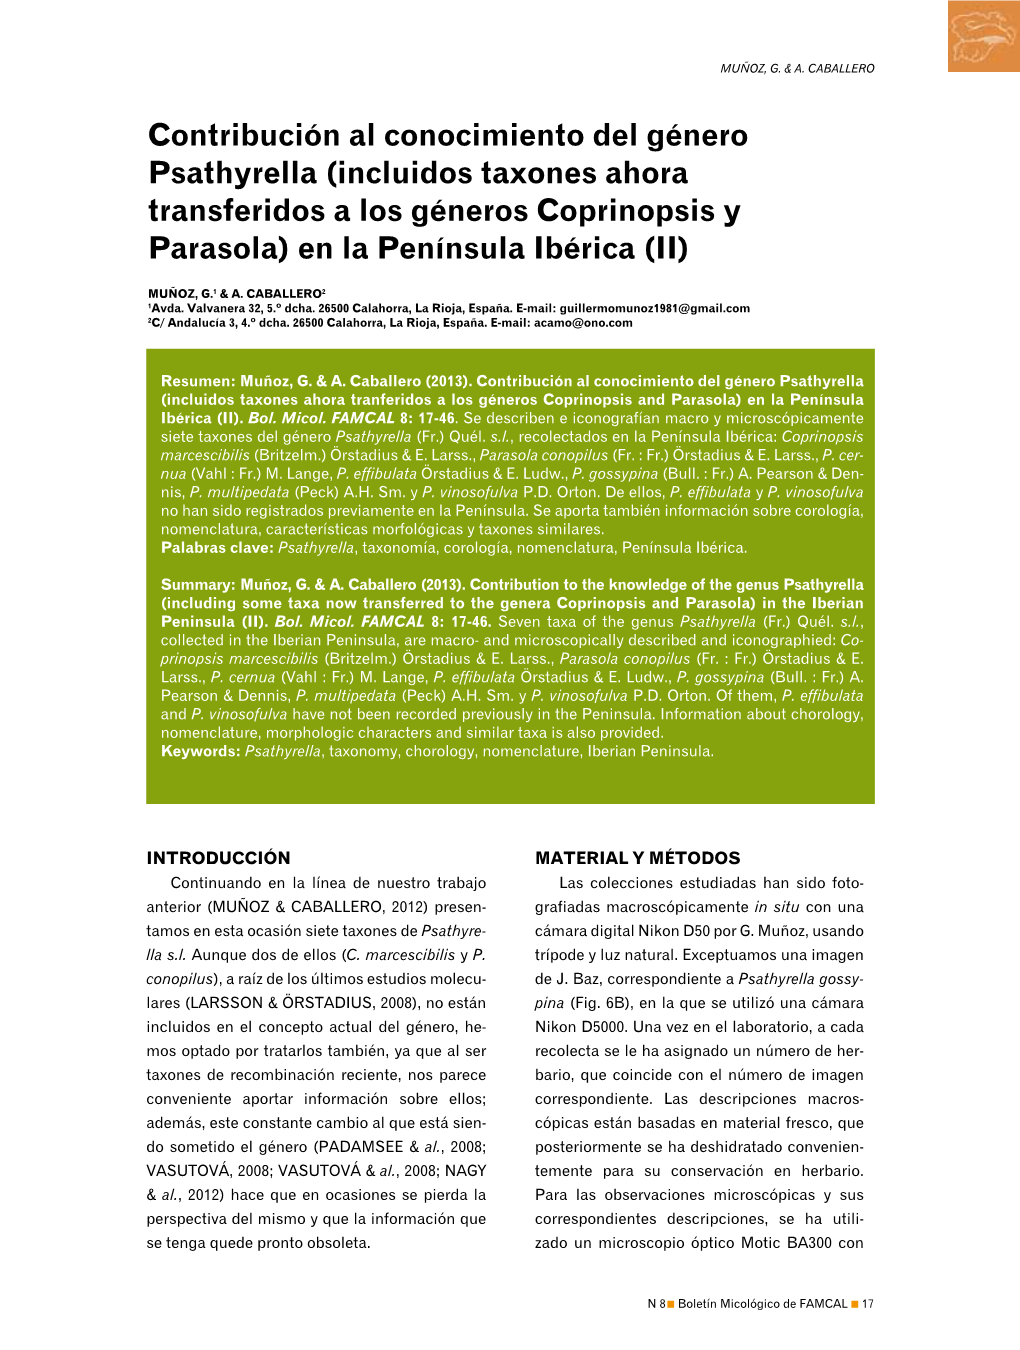 Contribución Al Conocimiento Del Género Psathyrella (Incluidos Taxones Ahora Transferidos a Los Géneros Coprinopsis Y Parasola) En La Península Ibérica (II)